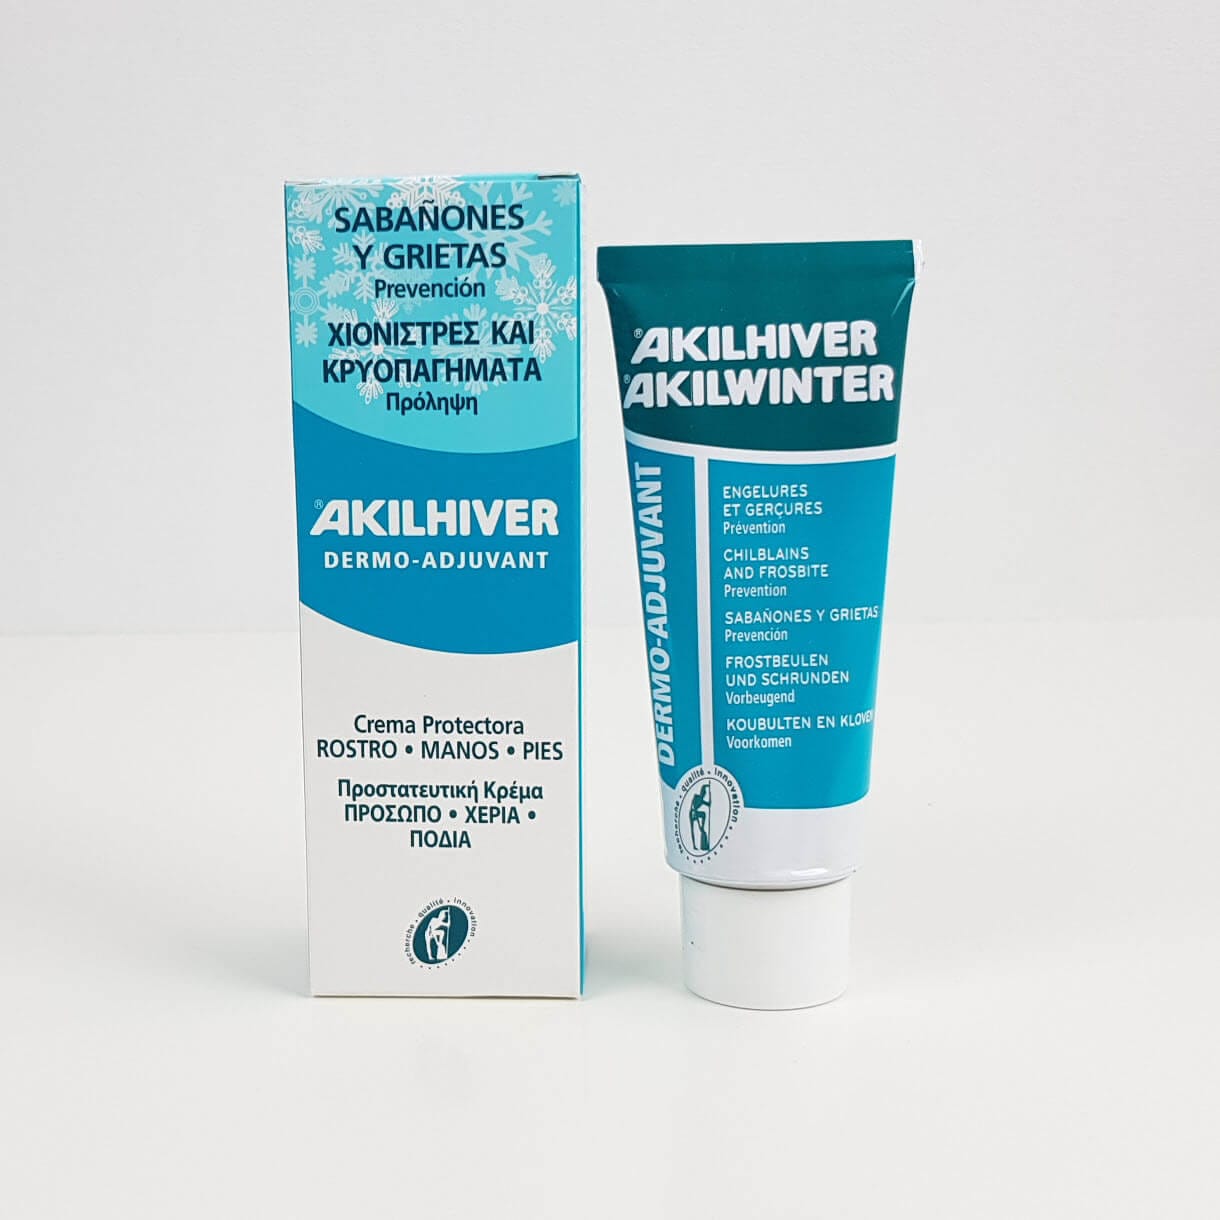 Akilwinter (for Chilblain Prevention)